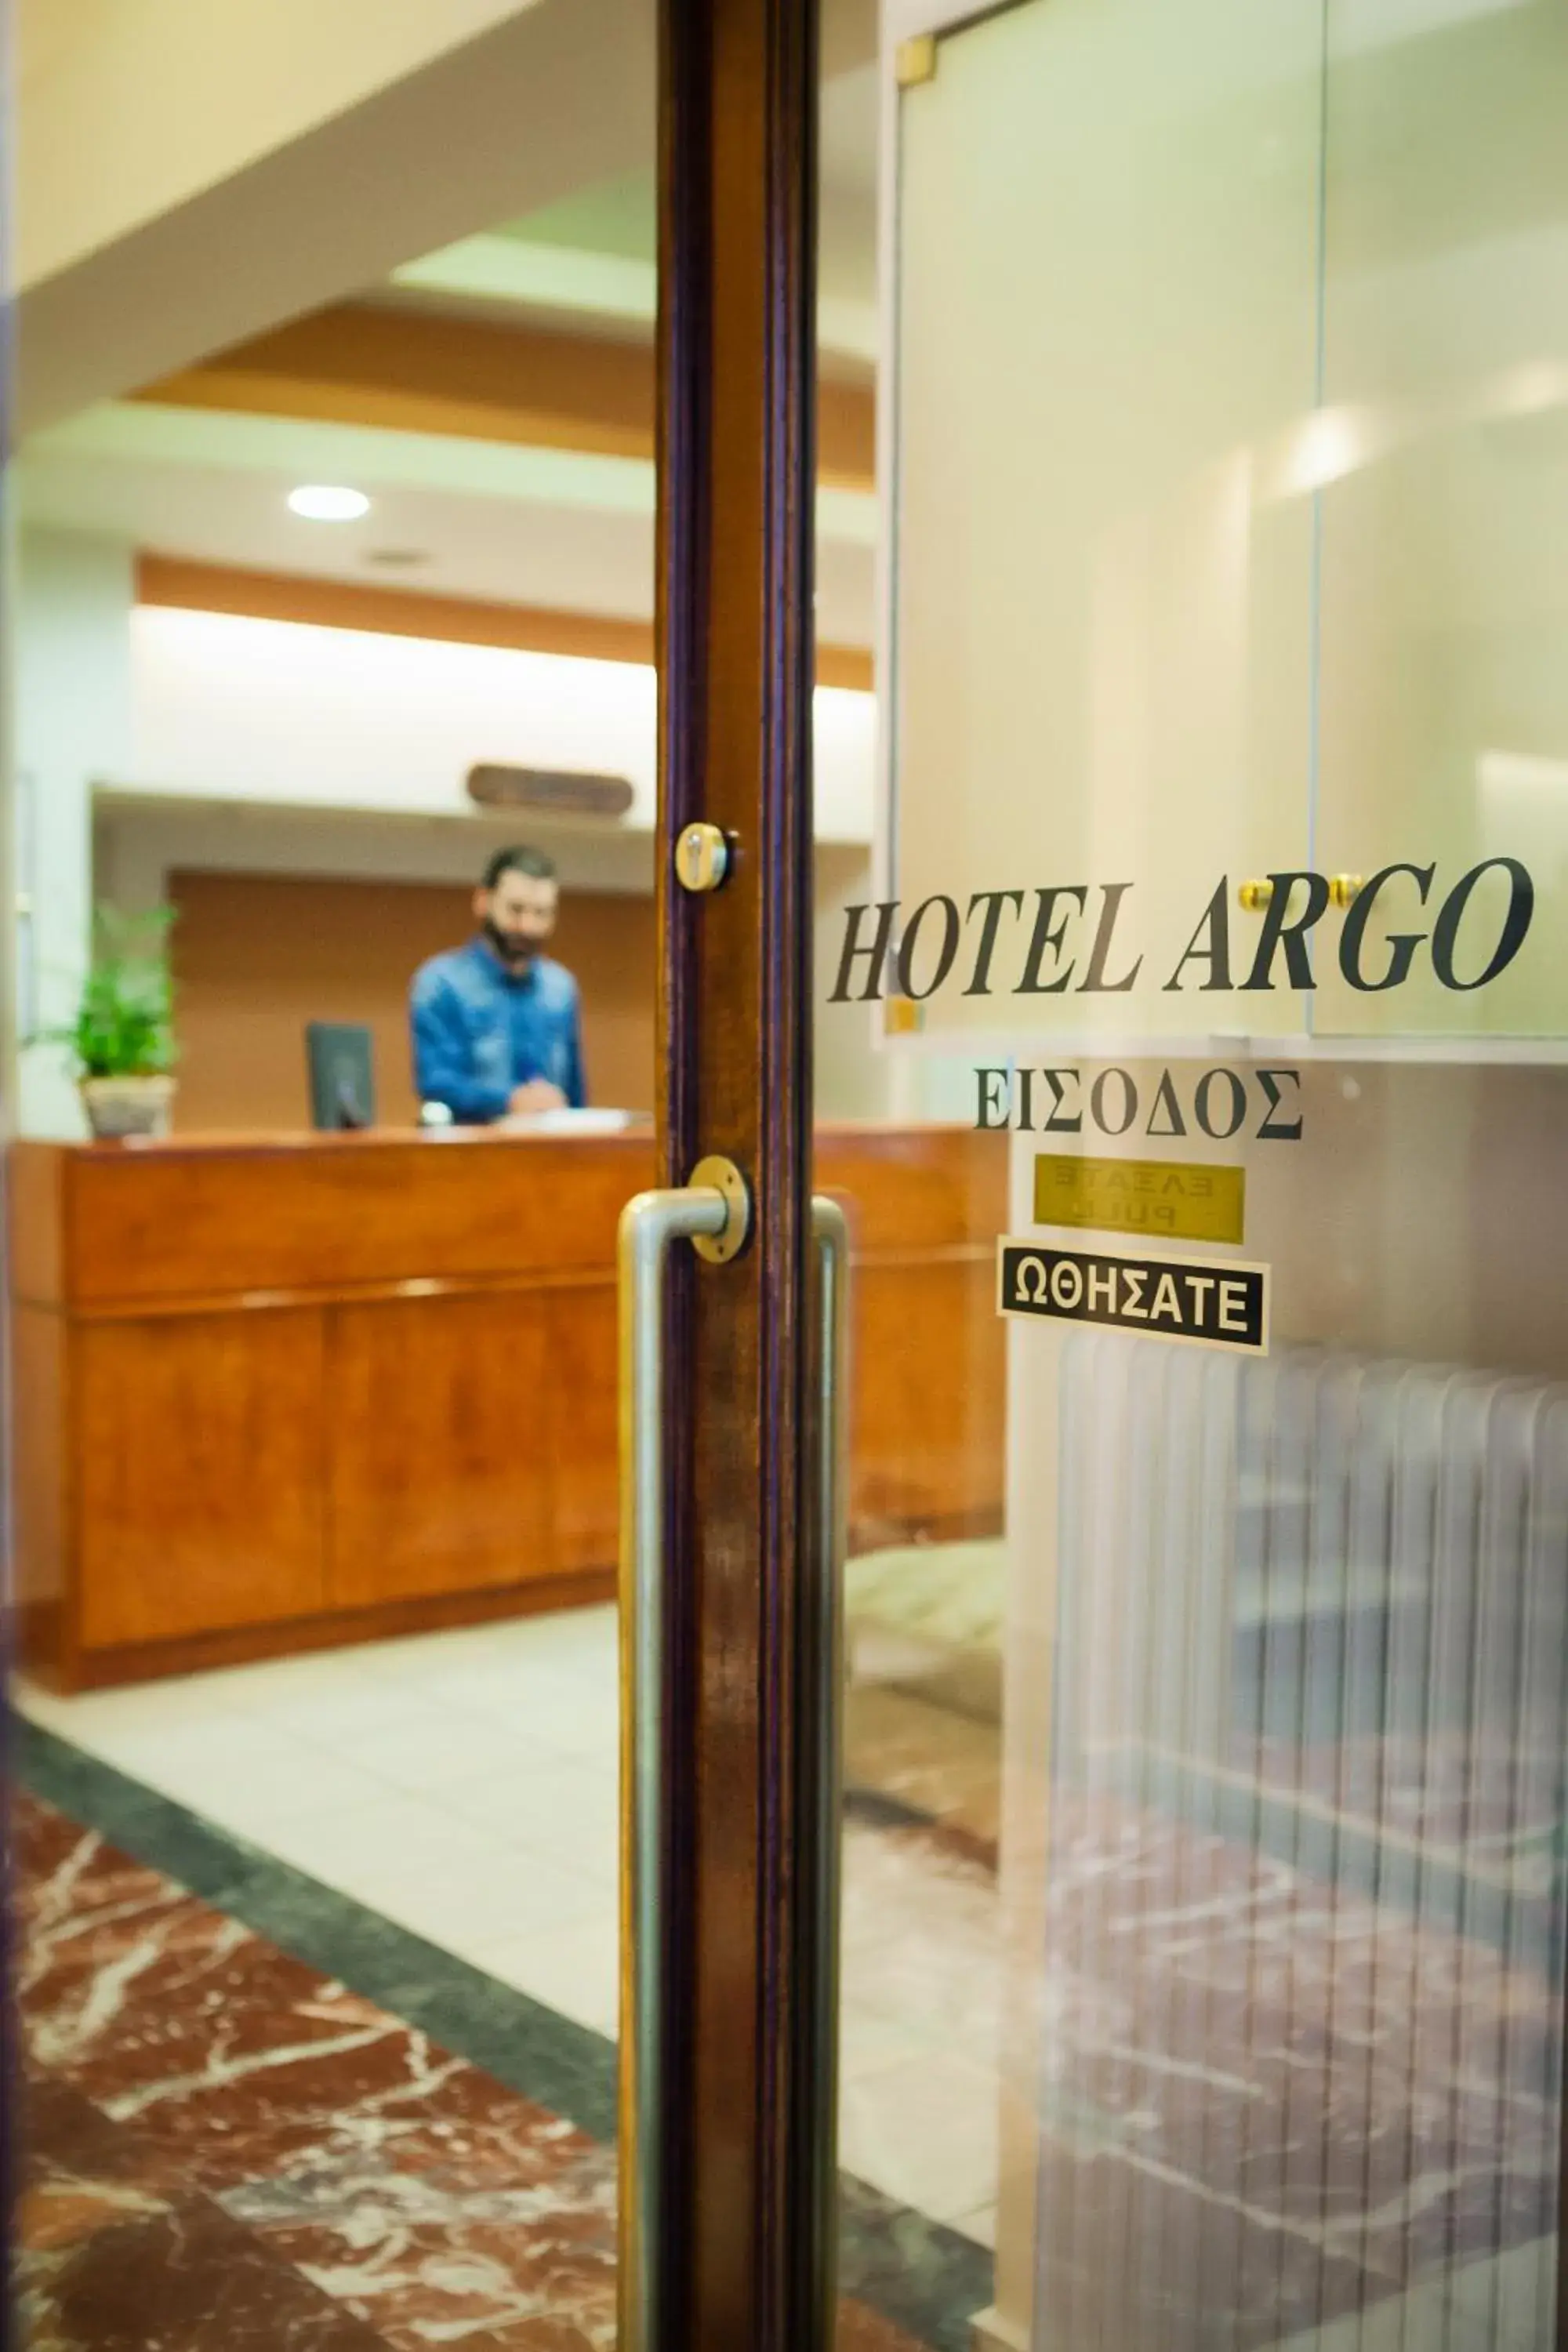 Lobby or reception in Hotel Argo